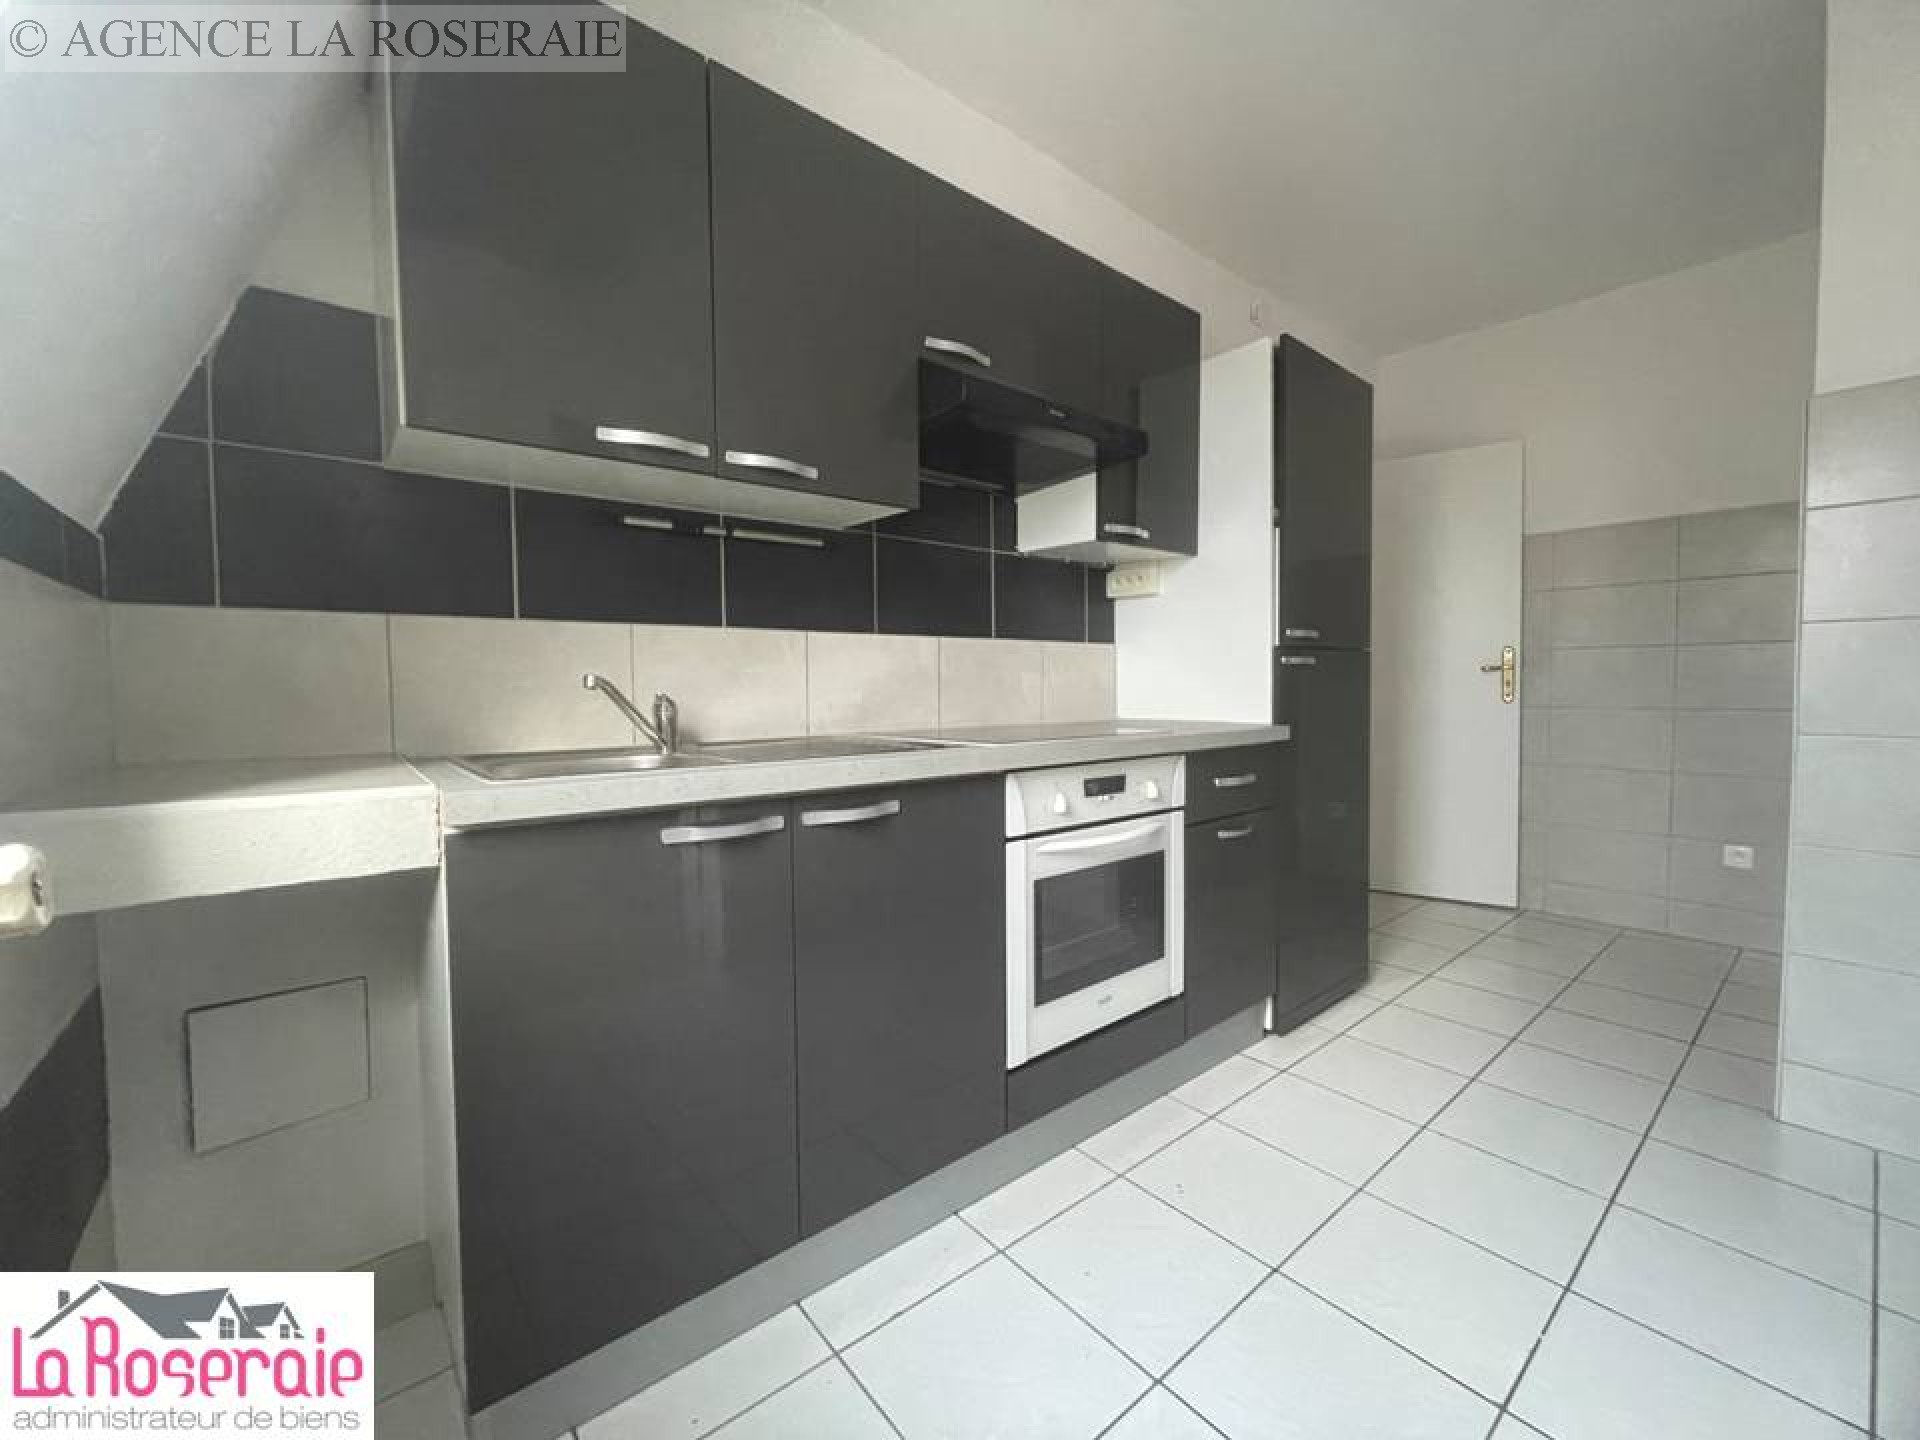 Location appartement - MULHOUSE 53 m², 2 pièces